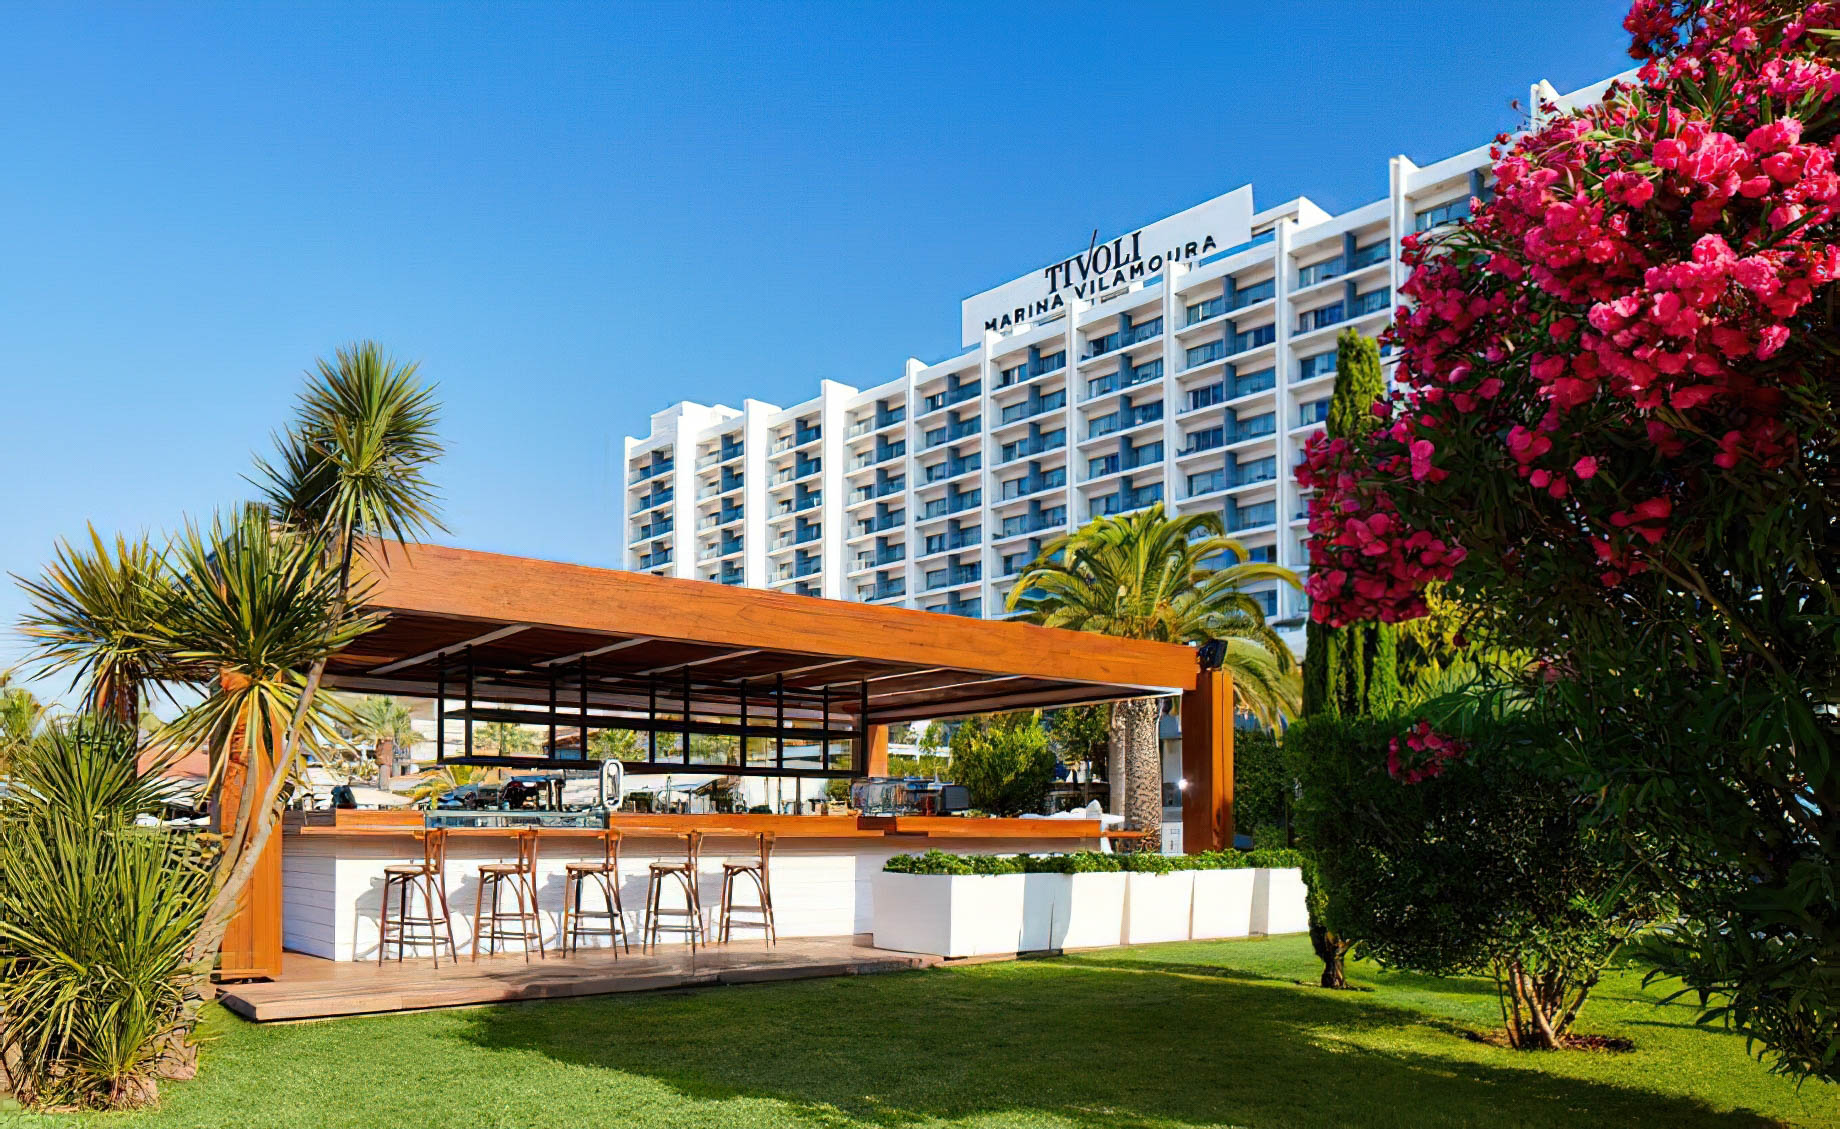 Tivoli Marina Vilamoura Algarve Resort – Portugal – DAzur Pool Bar